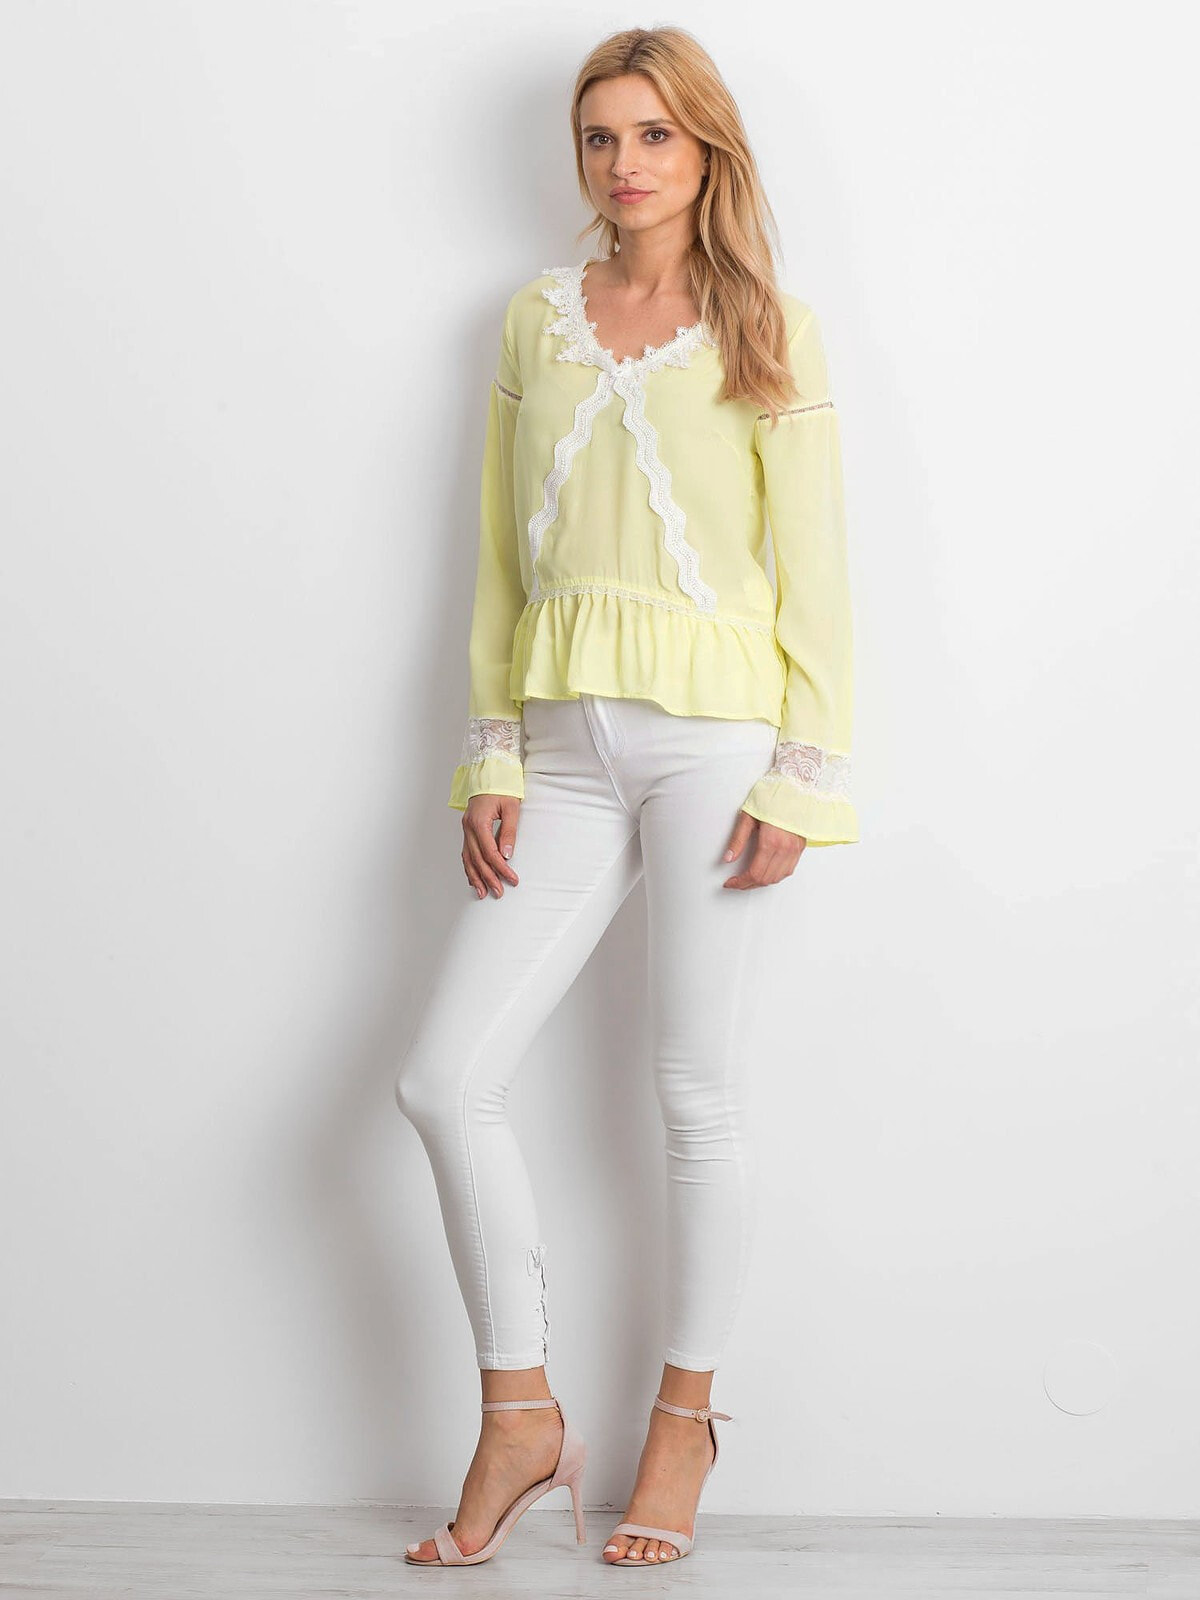 Женская блузка с длинным рукавом желтая Factory Price